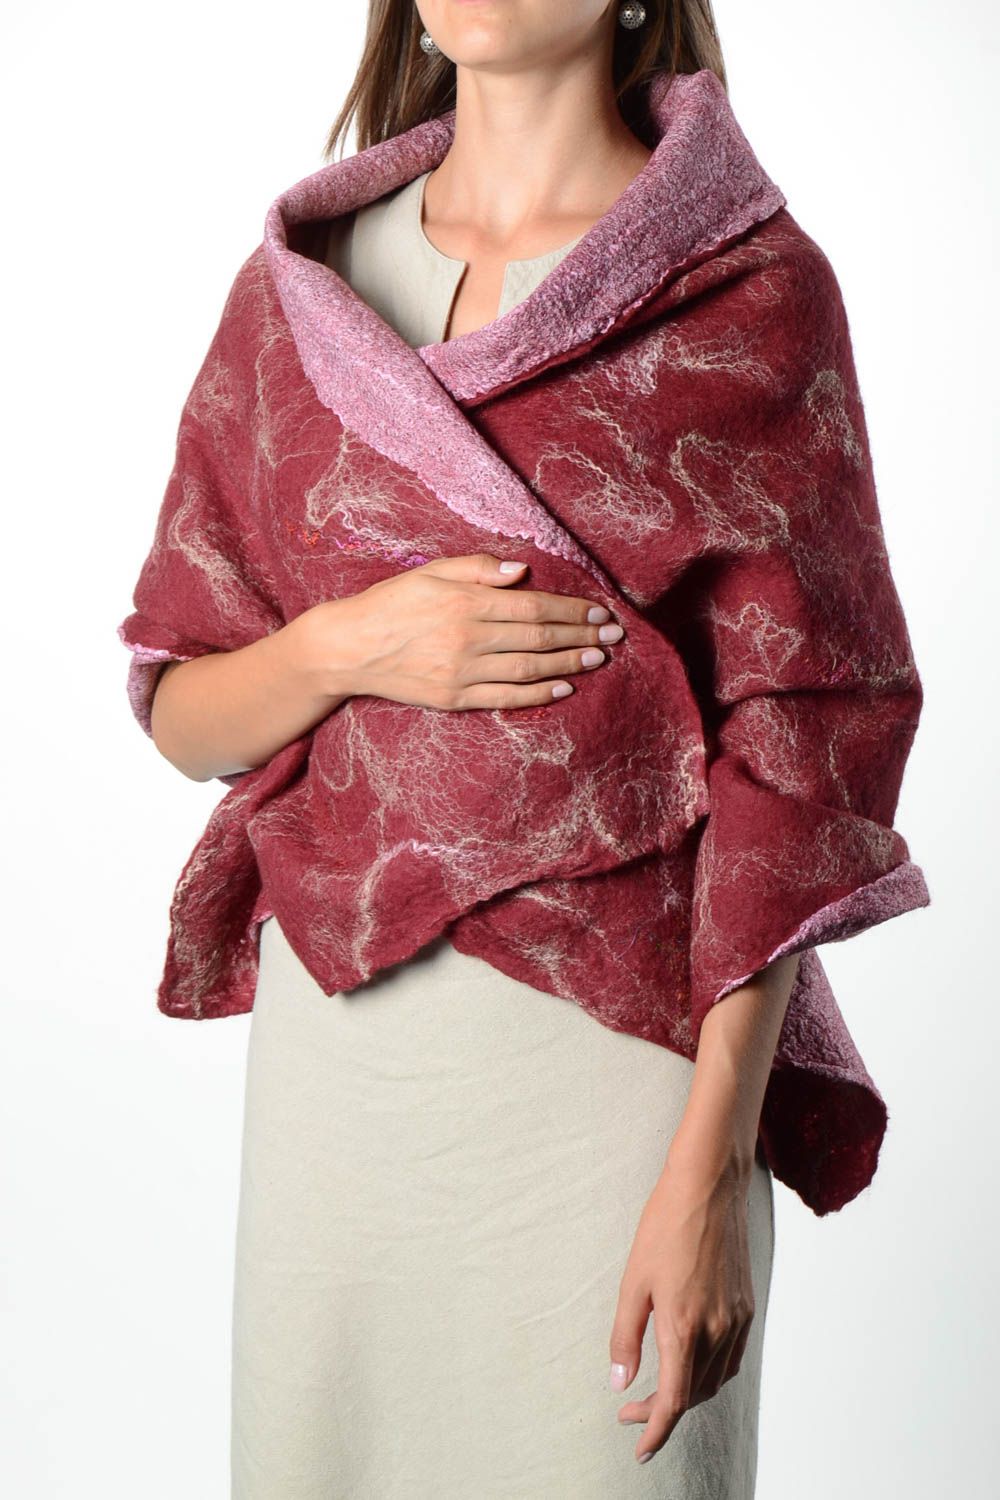 Handmade gefilzter Schal Frauen Accessoire Geschenk für Frau Damen Schal toll foto 1